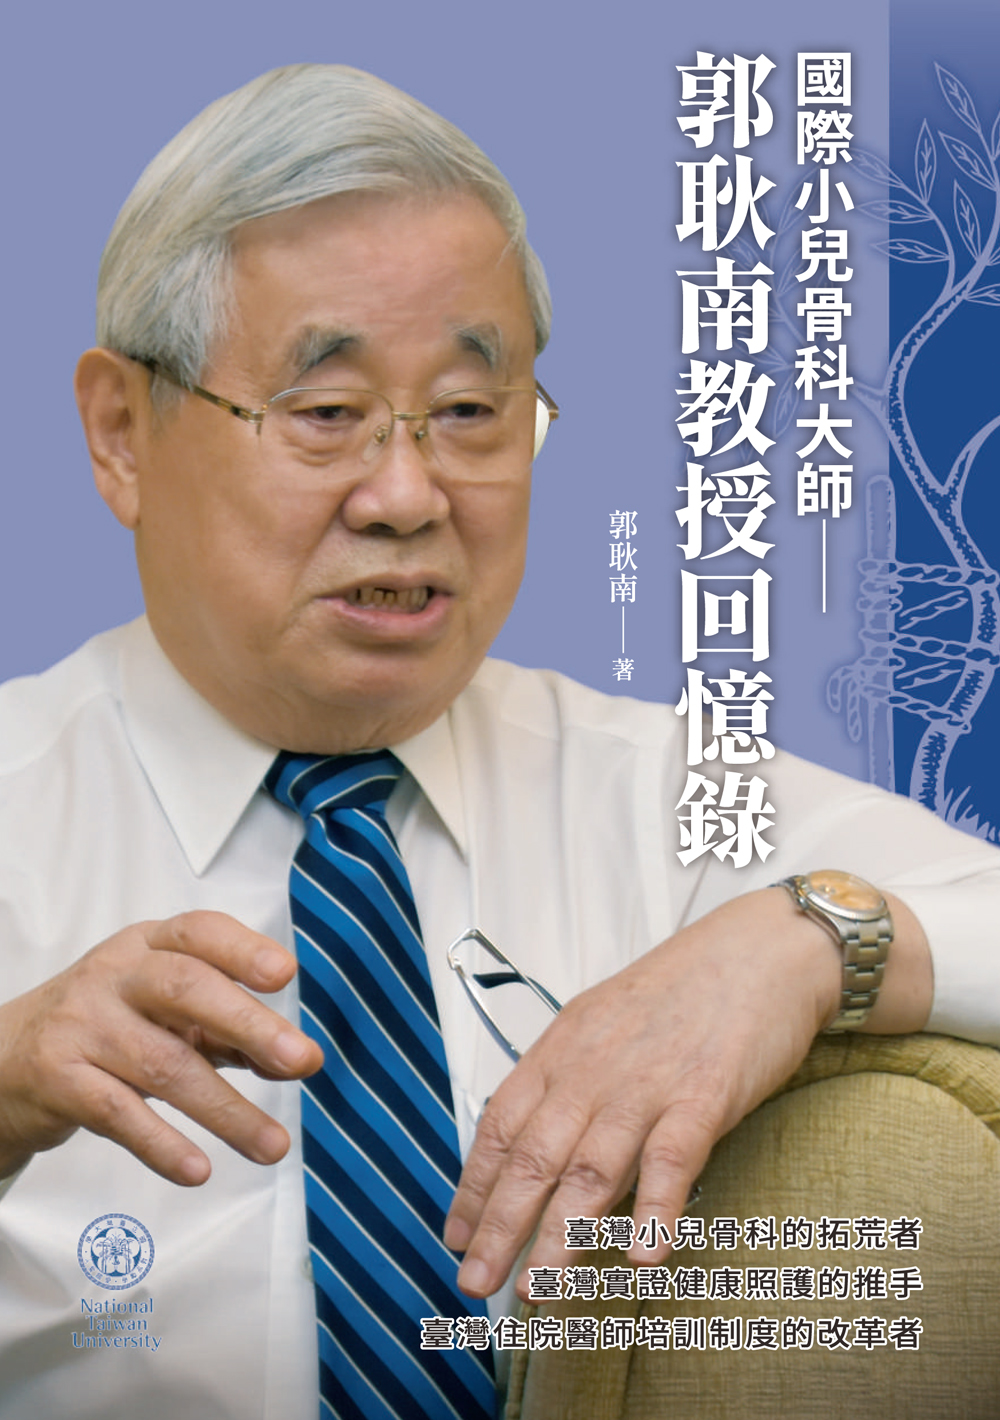 The Memoirs of Professor Ken N. Kuo: Pediatric Orthopedics Grandmaster